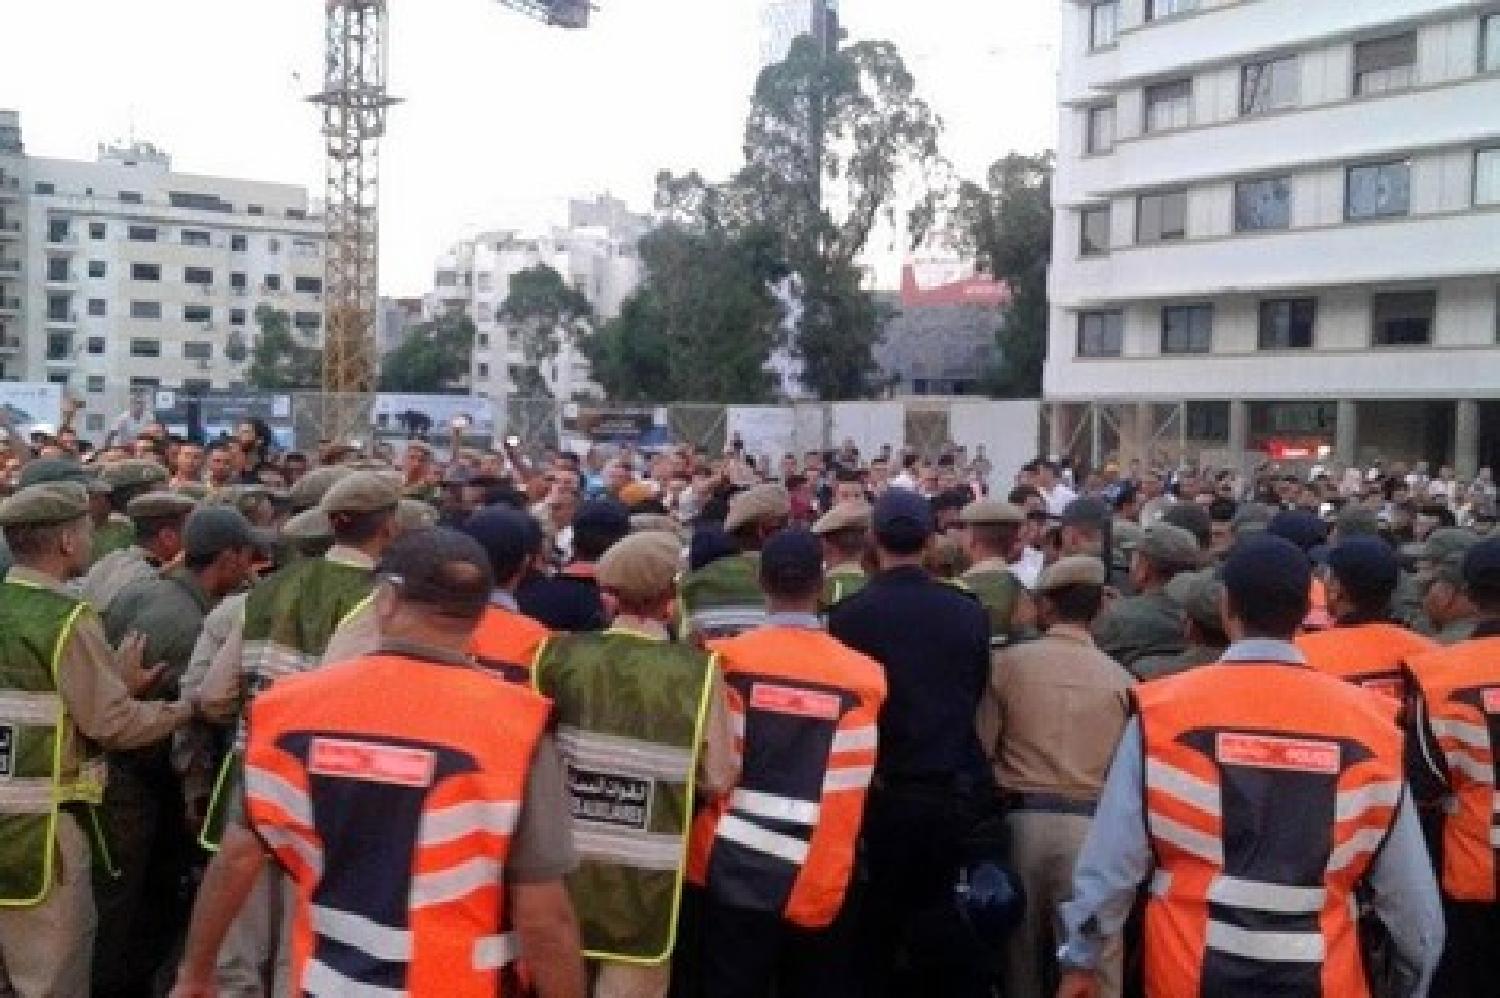 ولاية أمن طنجة تنفي استخدام القوة أثناء تفريق احتجاج لعمال مؤسسة خدماتية